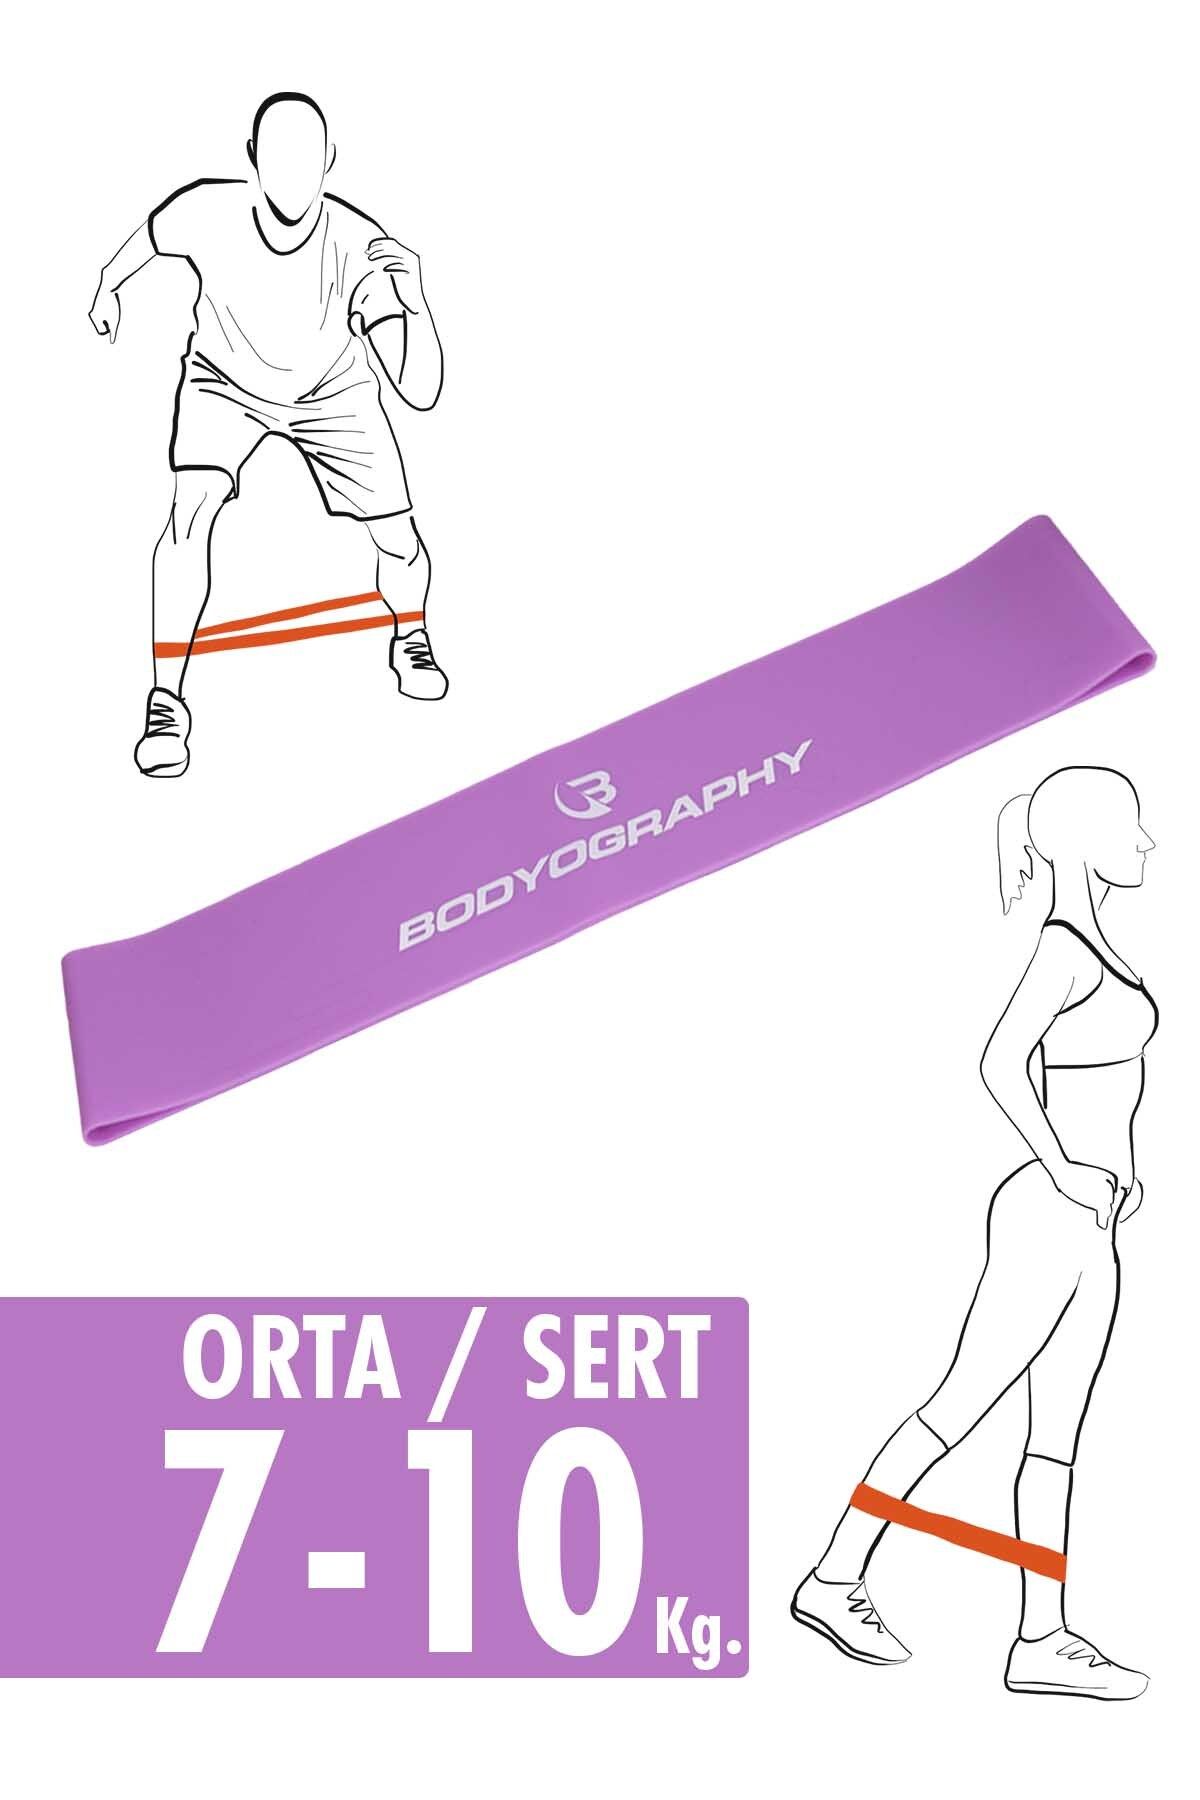 Bodyography Ultra Dayanıklı Silikon Mini Halka Egzersiz Direnç Bantı Pilates Lastiği Orta / Sert Seviye Mor